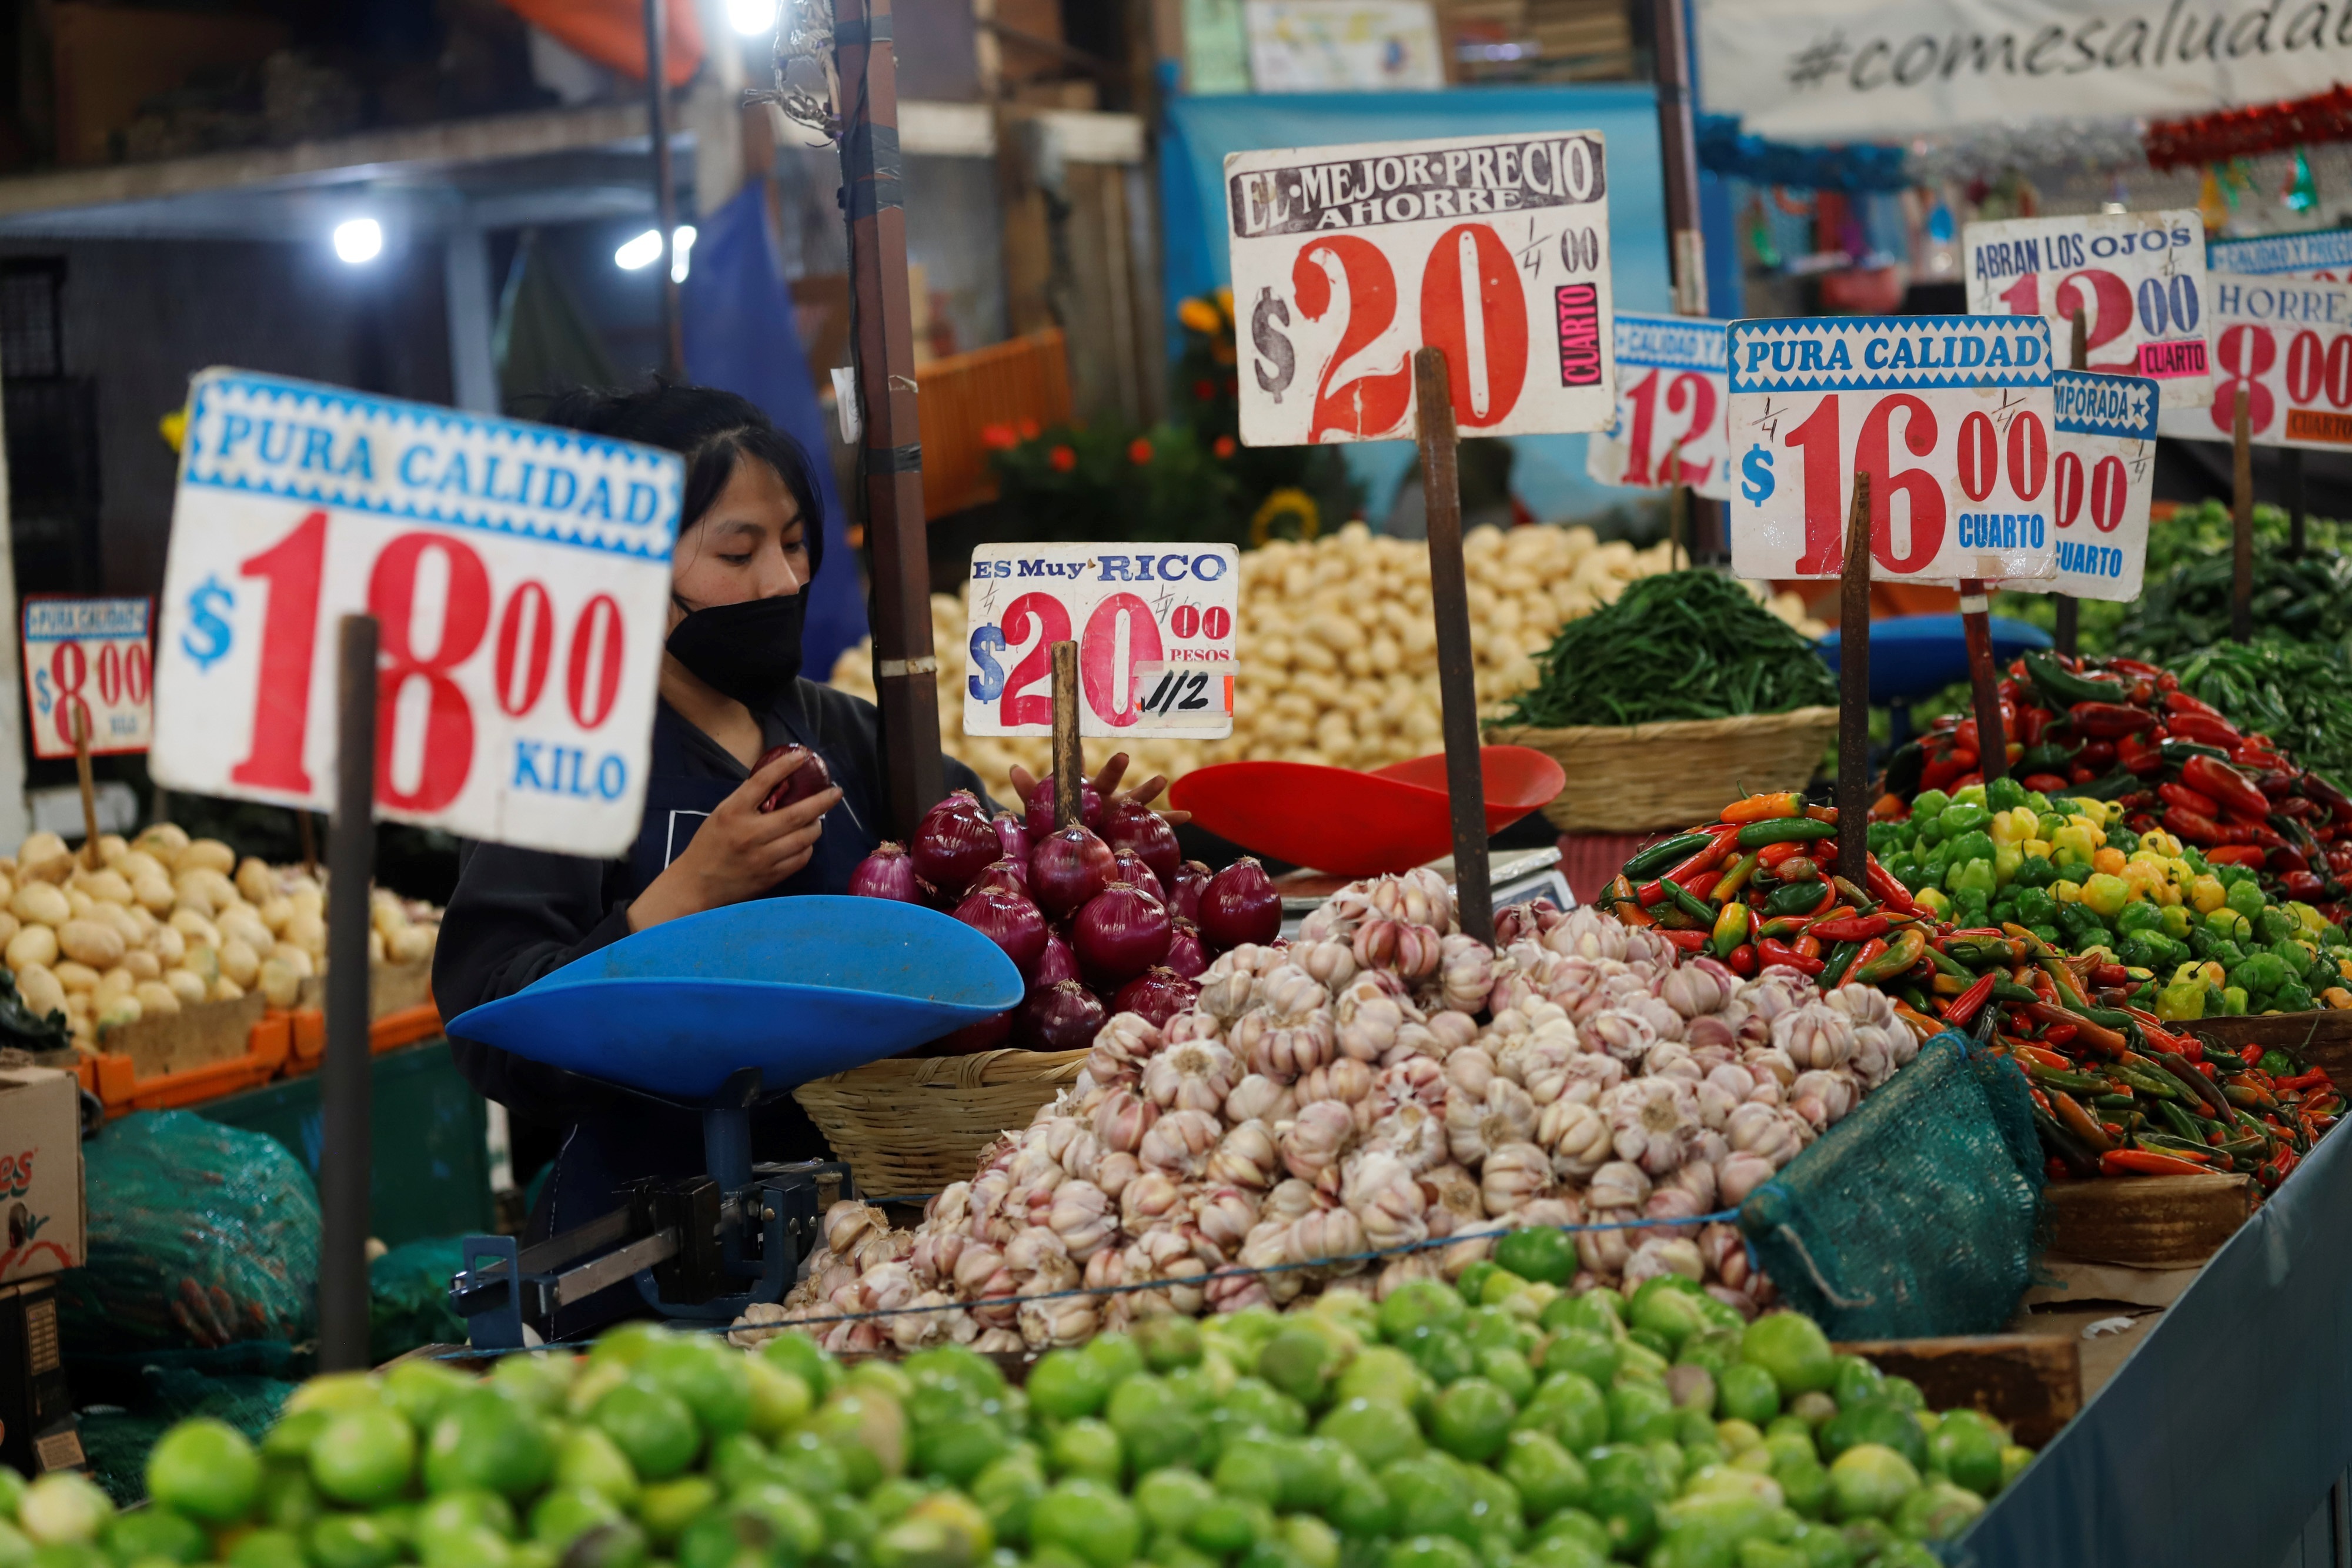 Una mujer vende verduras en un mercado de Ciudad de México, foto de archivo. EFE/Madla Hartz
